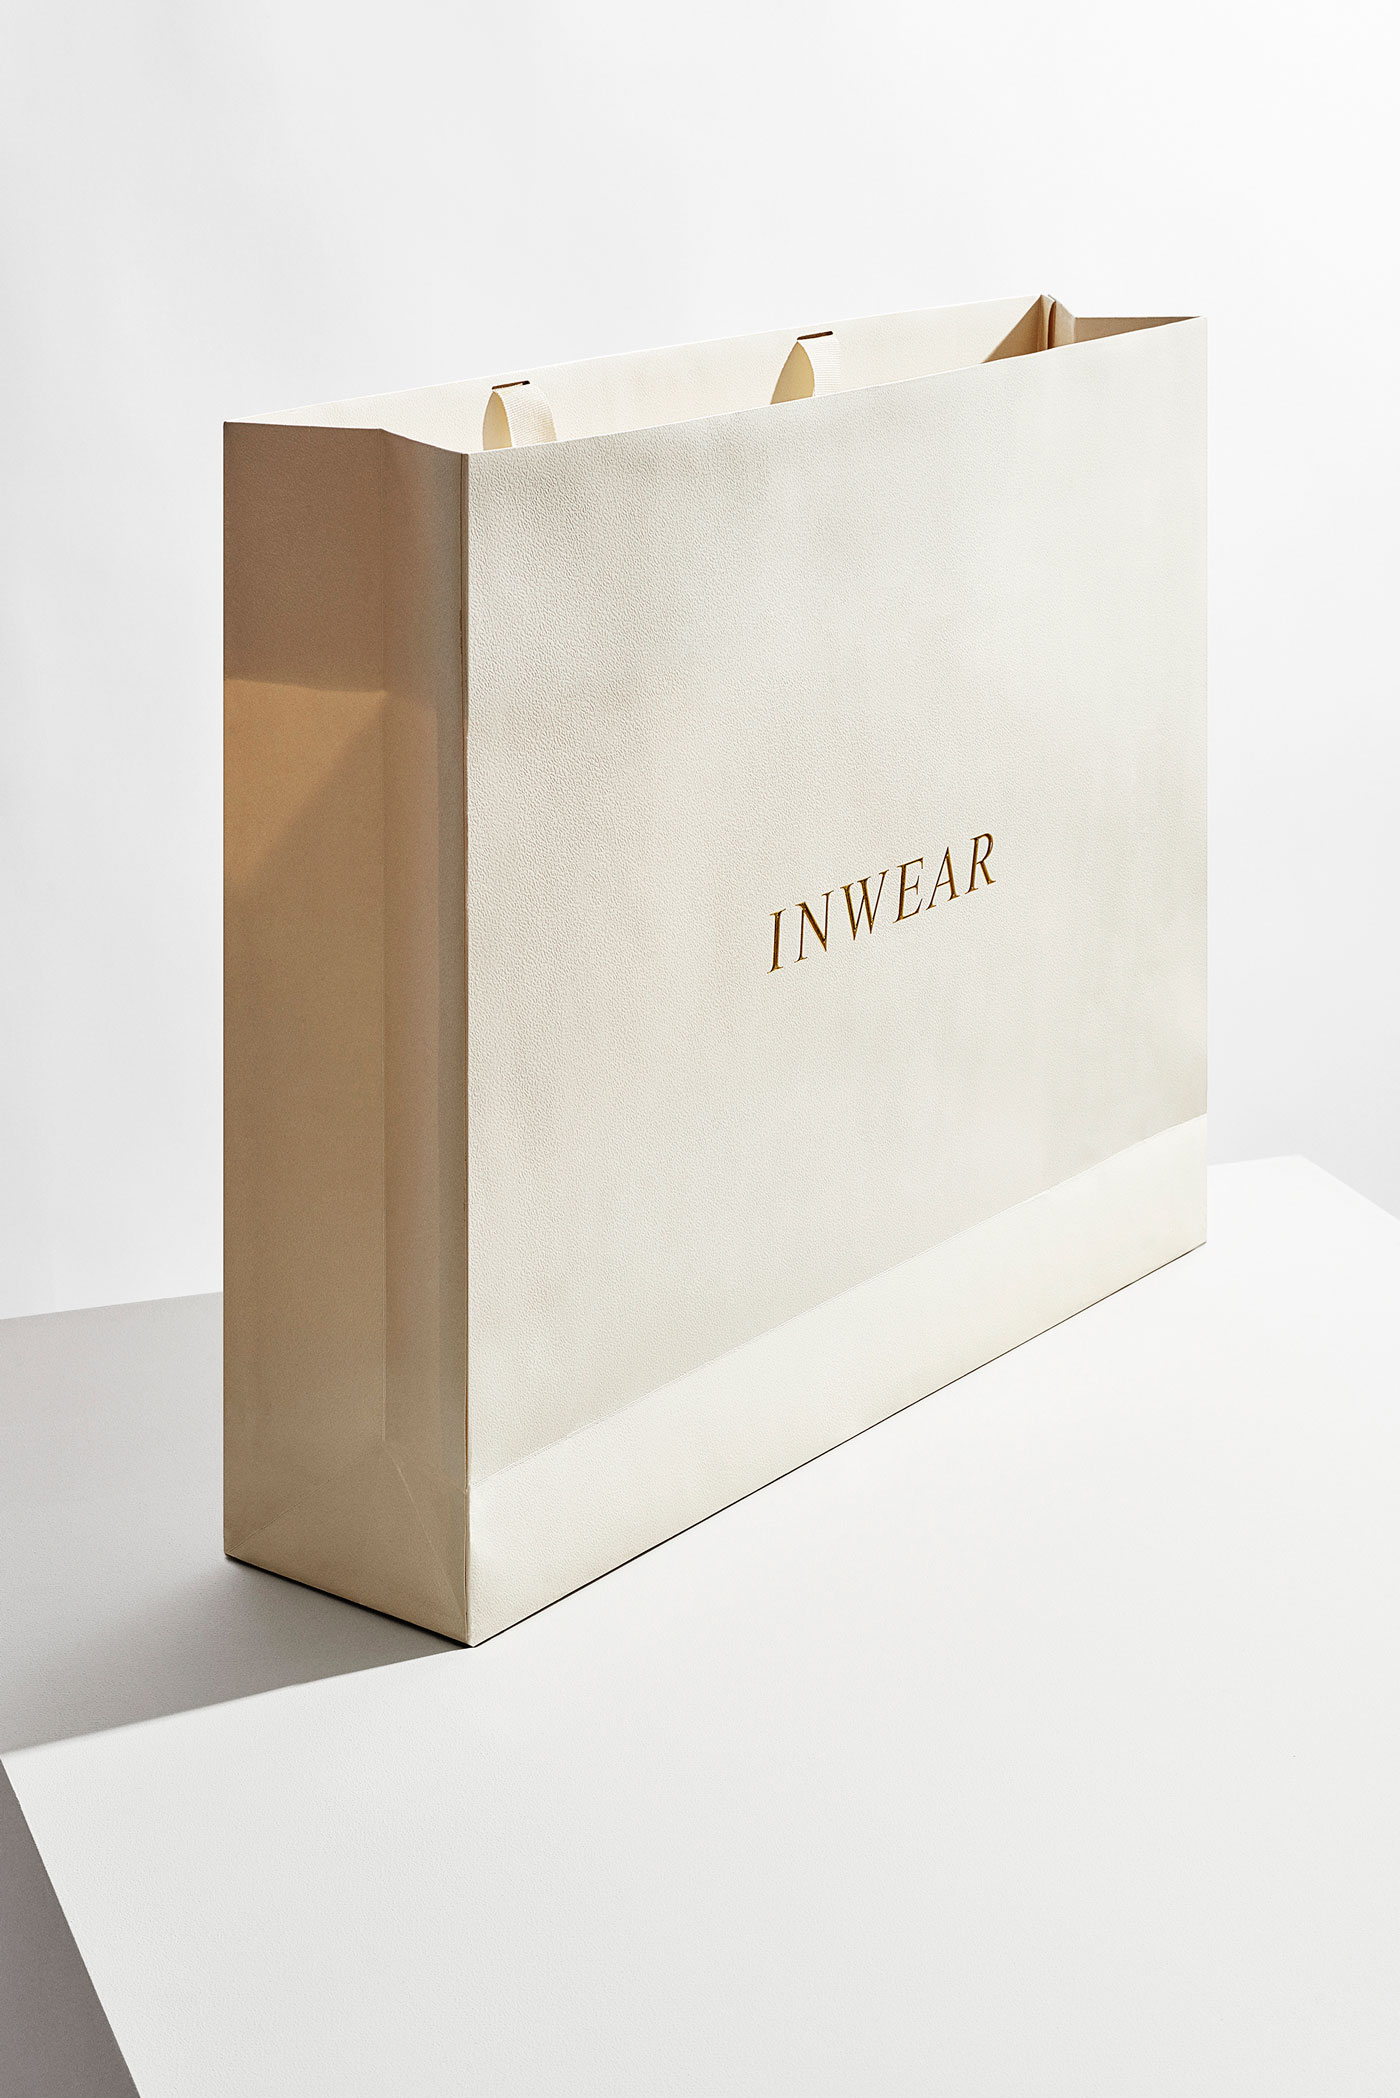 Inwear – Shopping bags